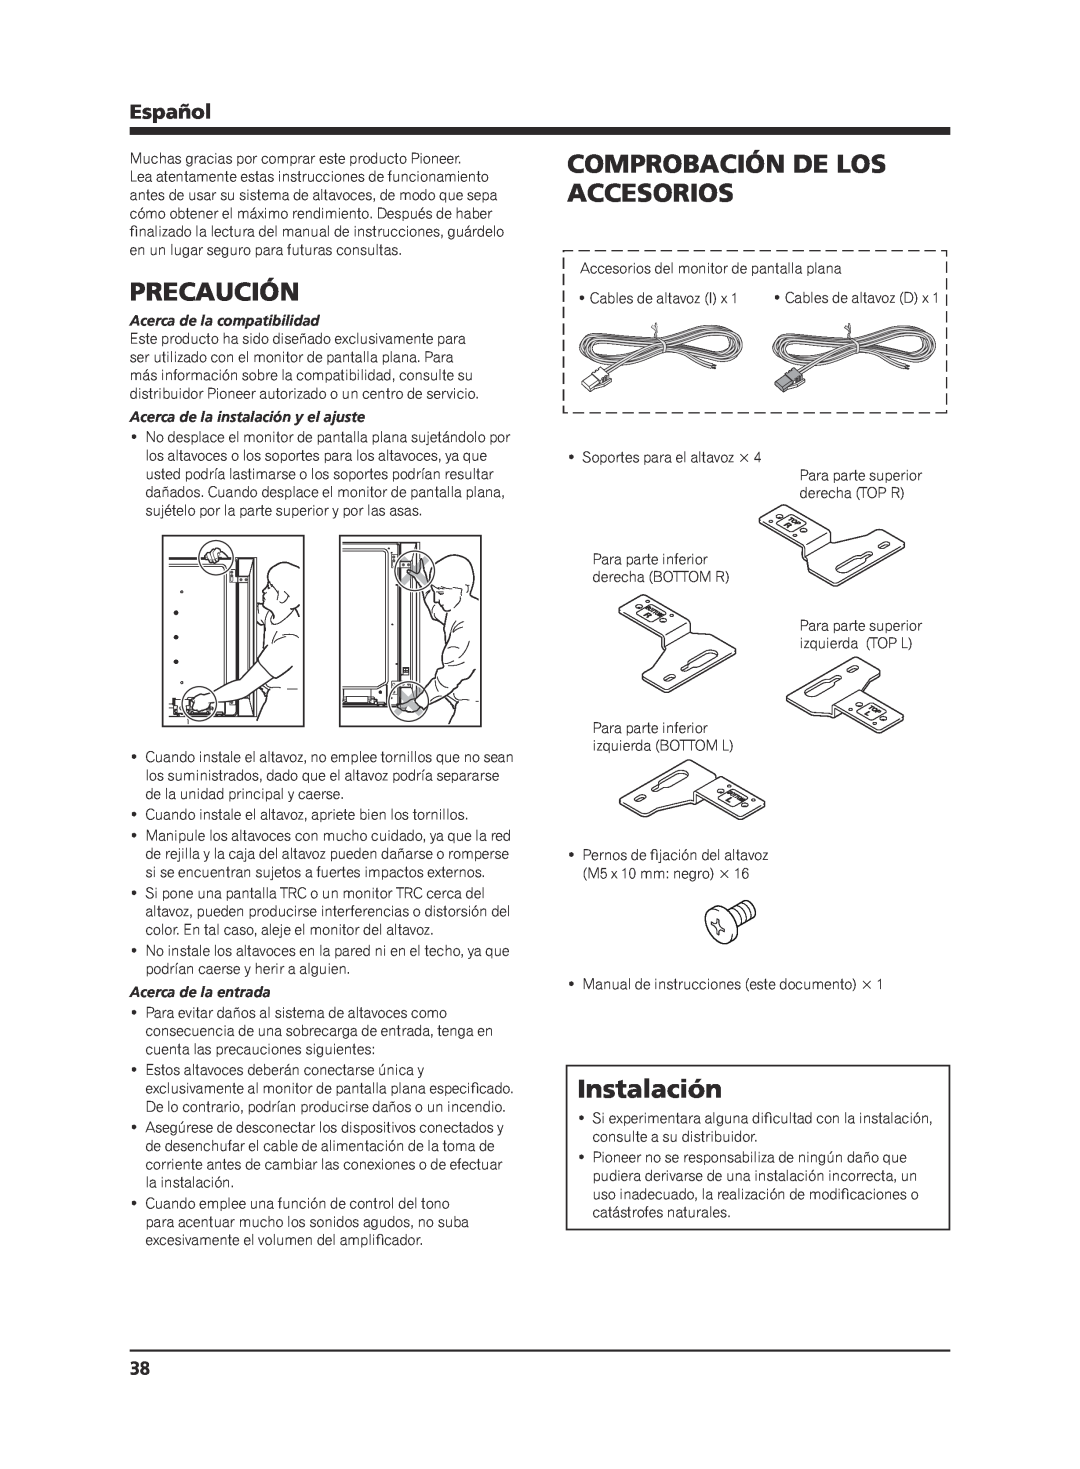 Pioneer KRP-S02 manual Precaución, Comprobación De Los Accesorios, Instalación, Español, Acerca de la compatibilidad 